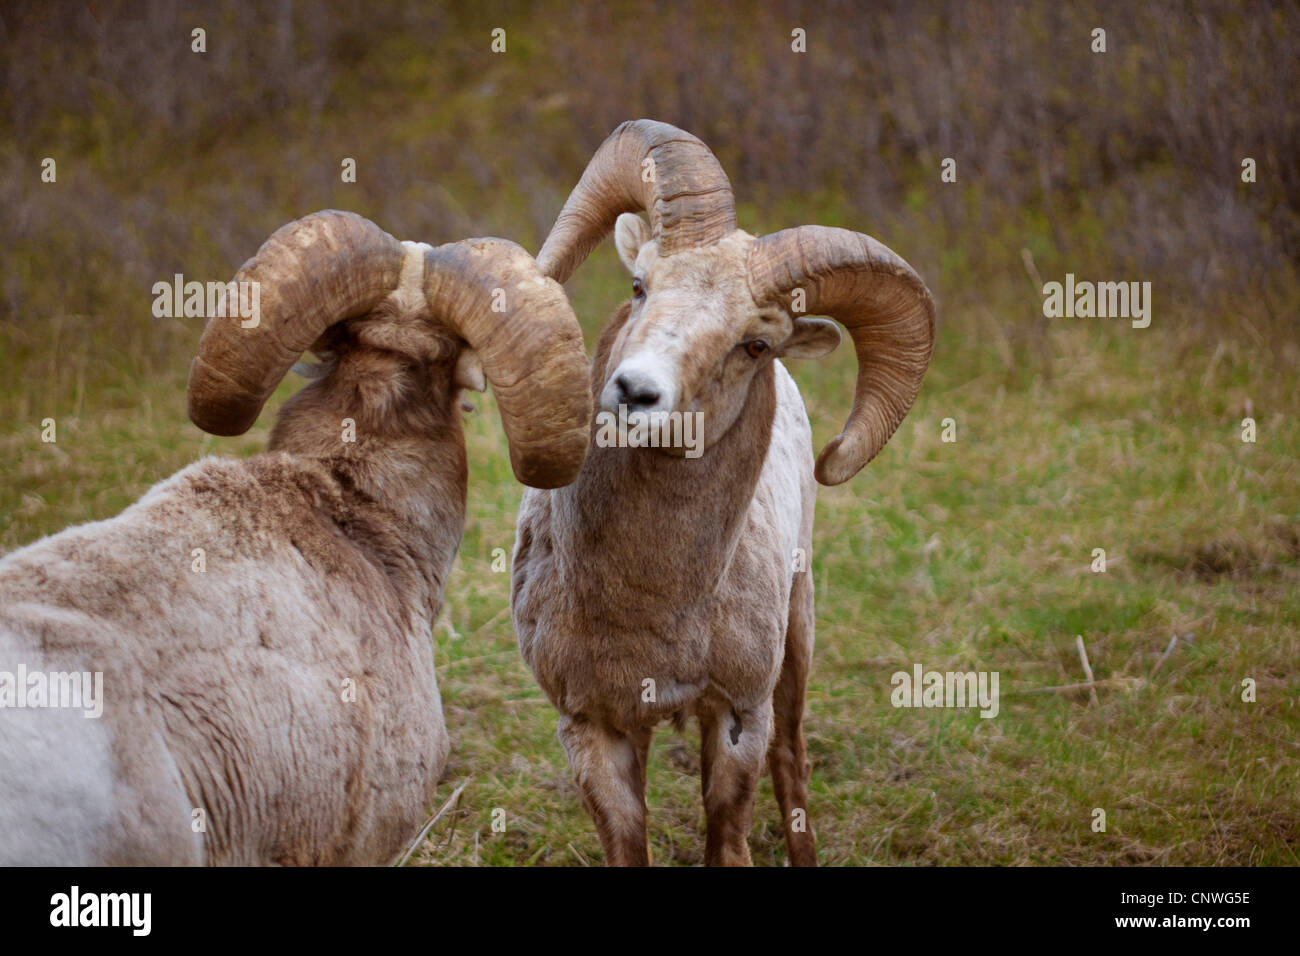 Bighorn, American bighorn, le pecore di montagna (Ovis canadensis), due montoni sniffing a ciascun altro, Canada, Alberta, Parco Nazionale dei laghi di Waterton Foto Stock